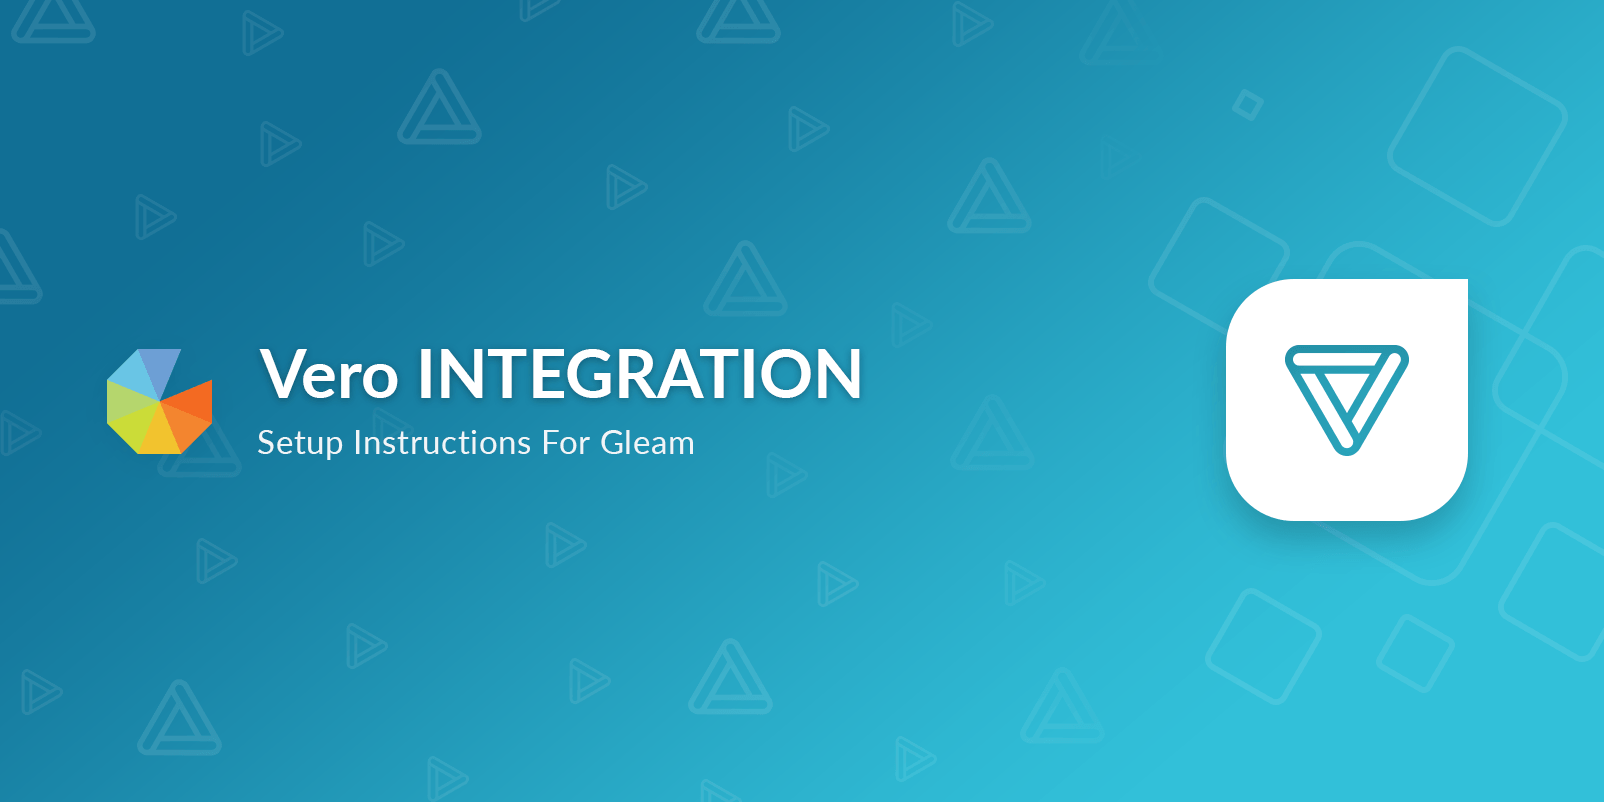 Vero Integration Setup Instructions for Gleam